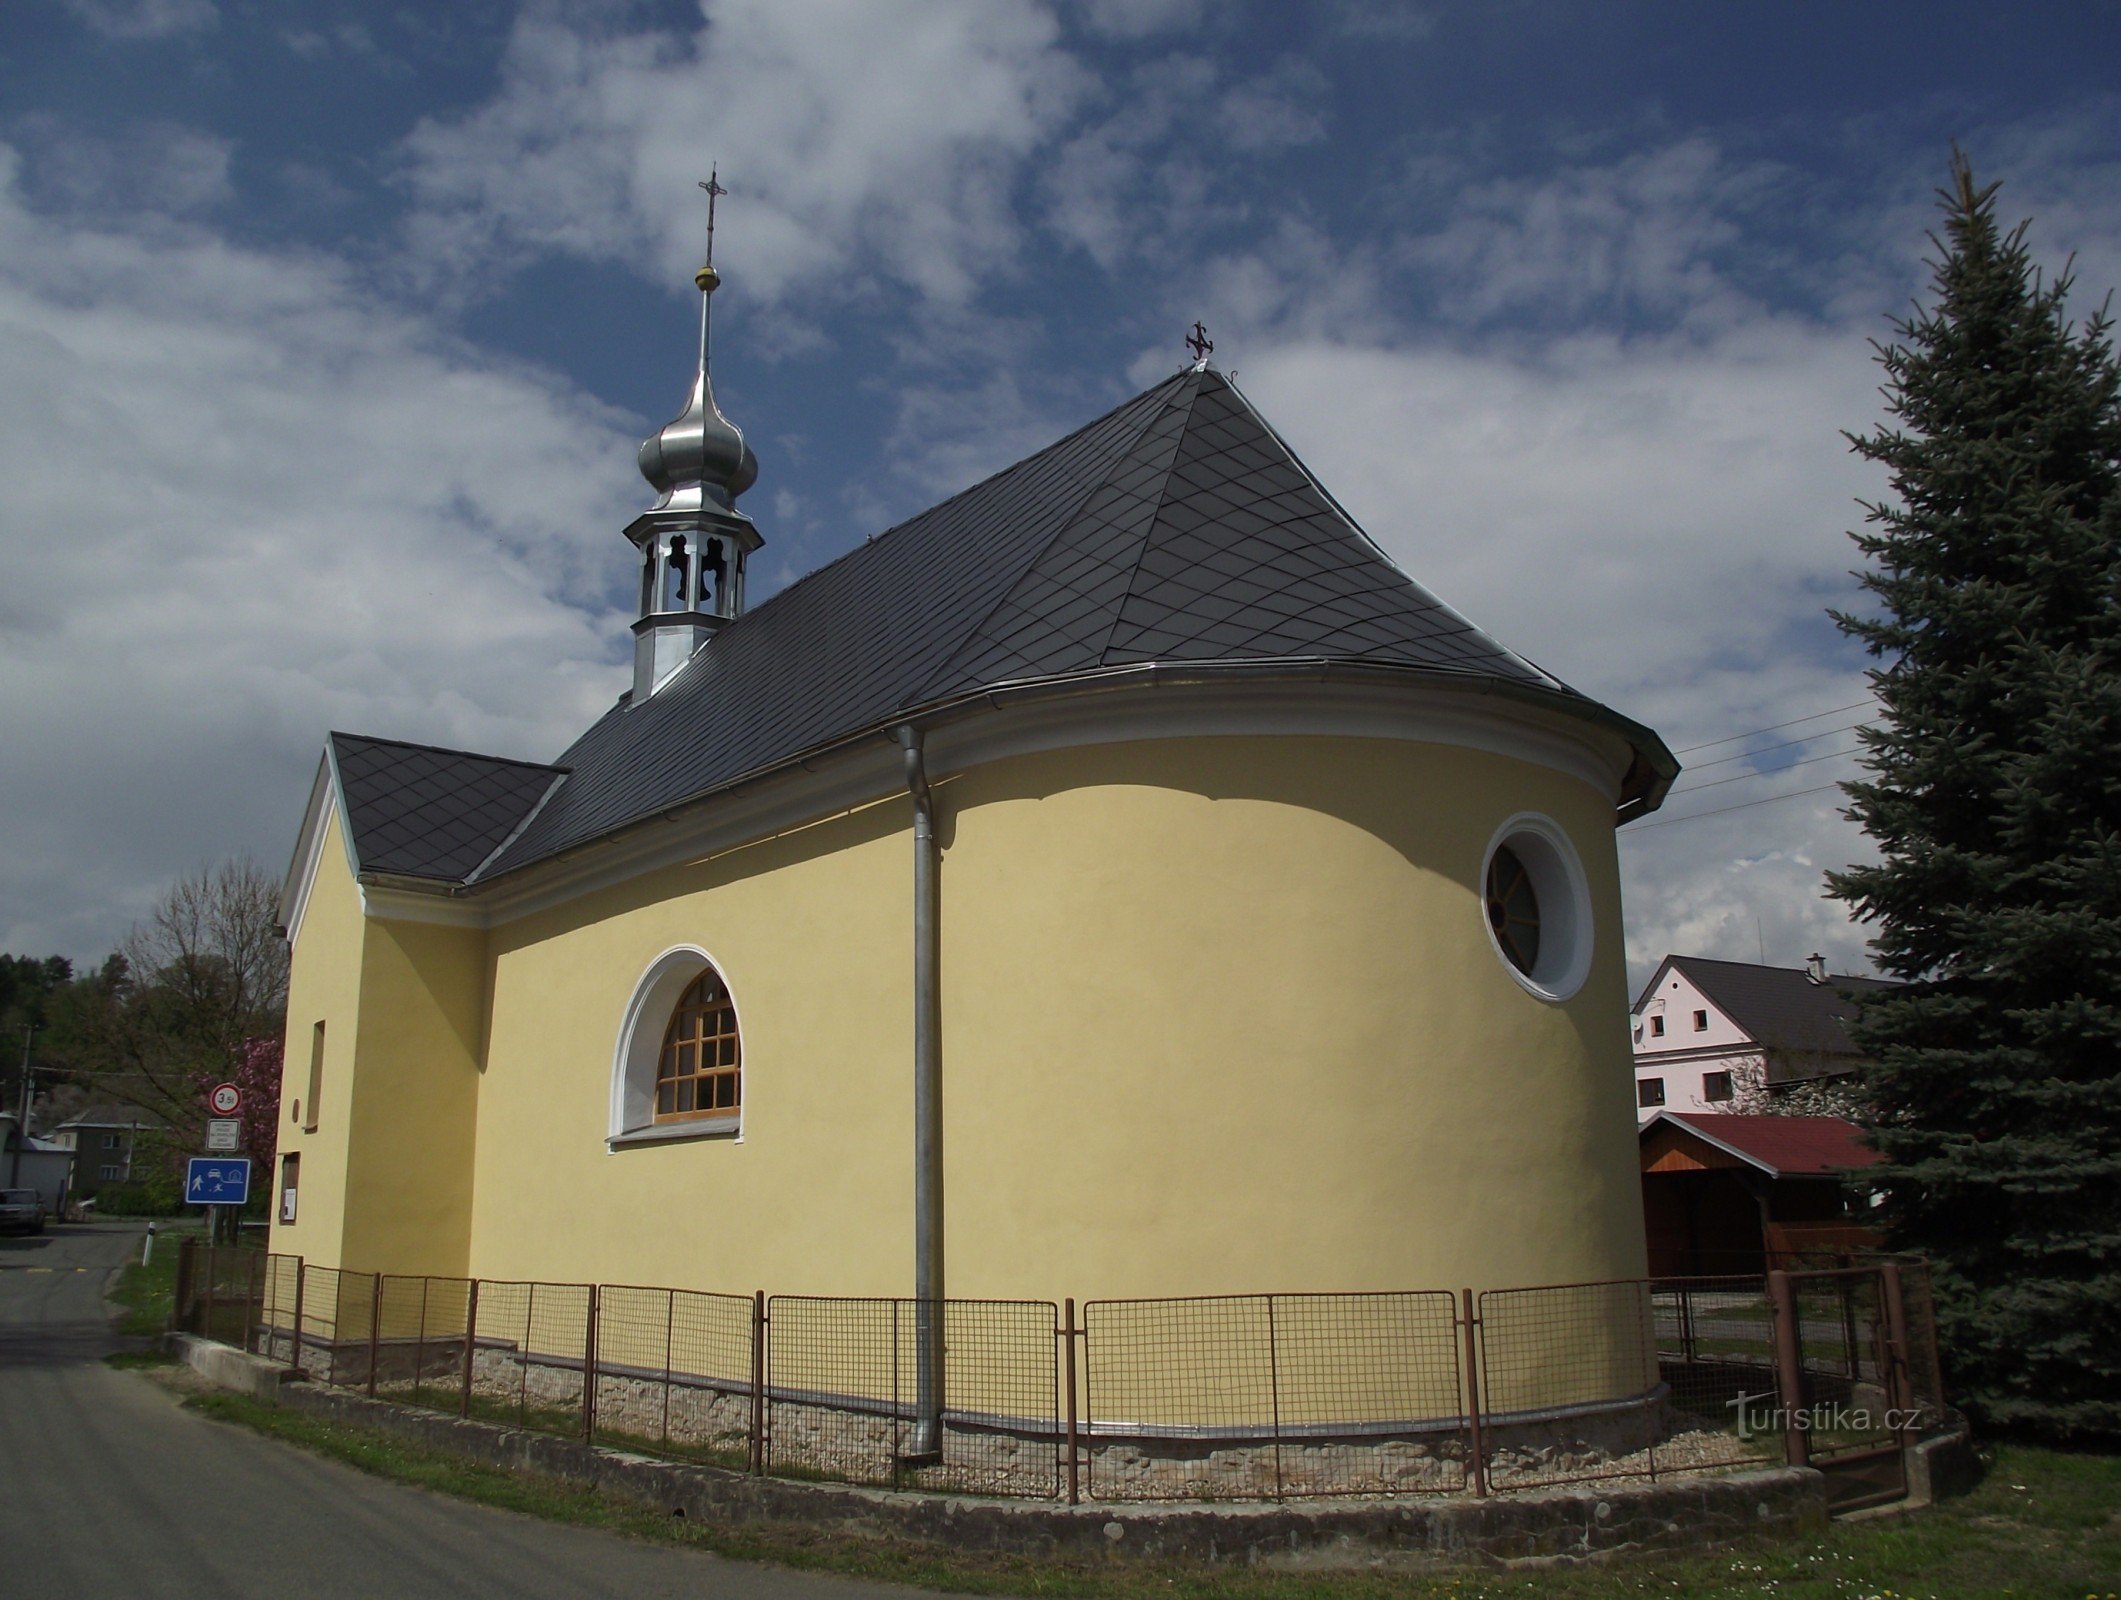 Vyšehoří - chapel of St. Jan Nepomucký